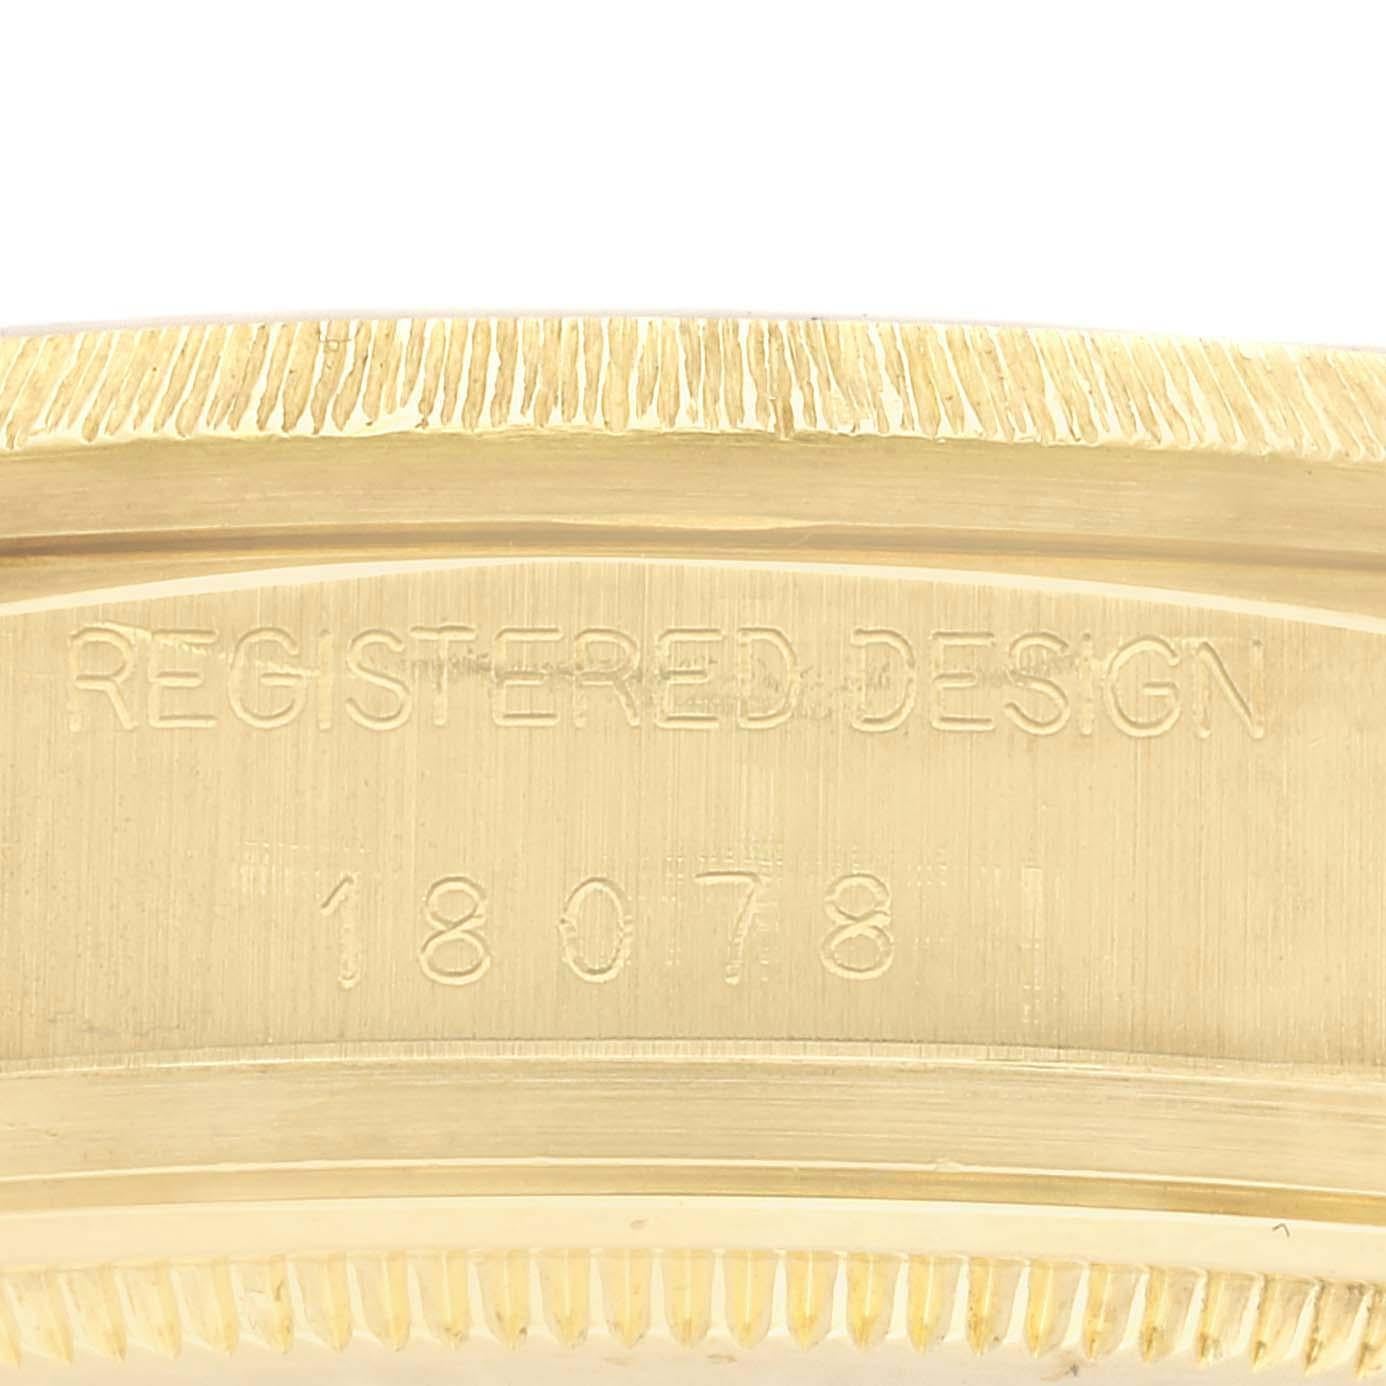 Rolex President Day-Date Cadran diamant Or jaune Finition écorce Montre homme 18078. Mouvement à remontage automatique certifié chronomètre avec fonction date à déclenchement rapide. Boîtier en or jaune 18 carats d'un diamètre de 36,0 mm. Logo Rolex